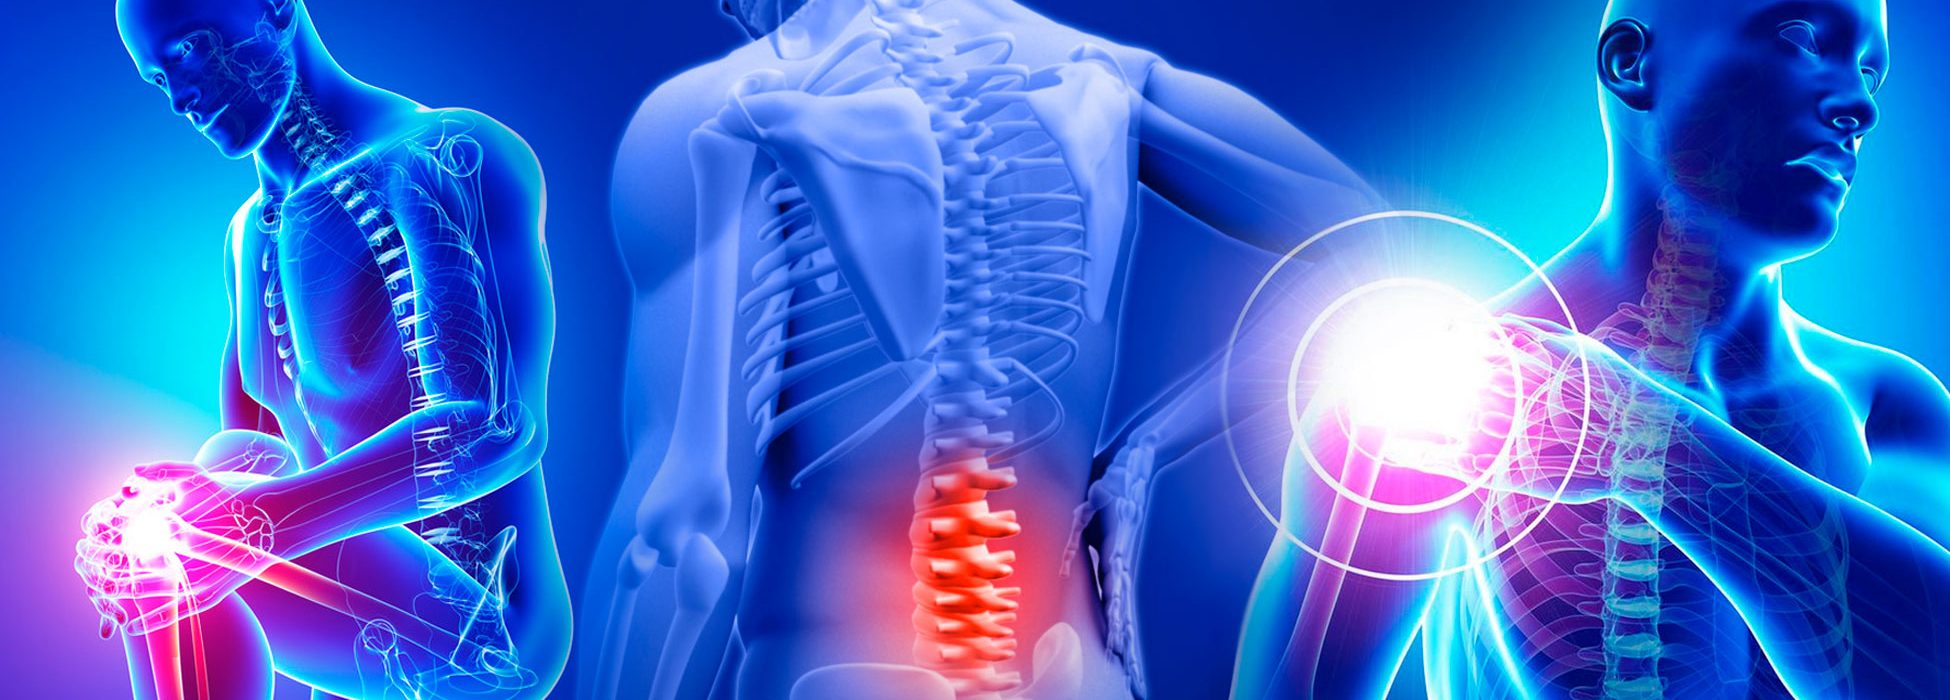 Knee, Back, Shoulder Pain – The Evolution Lab